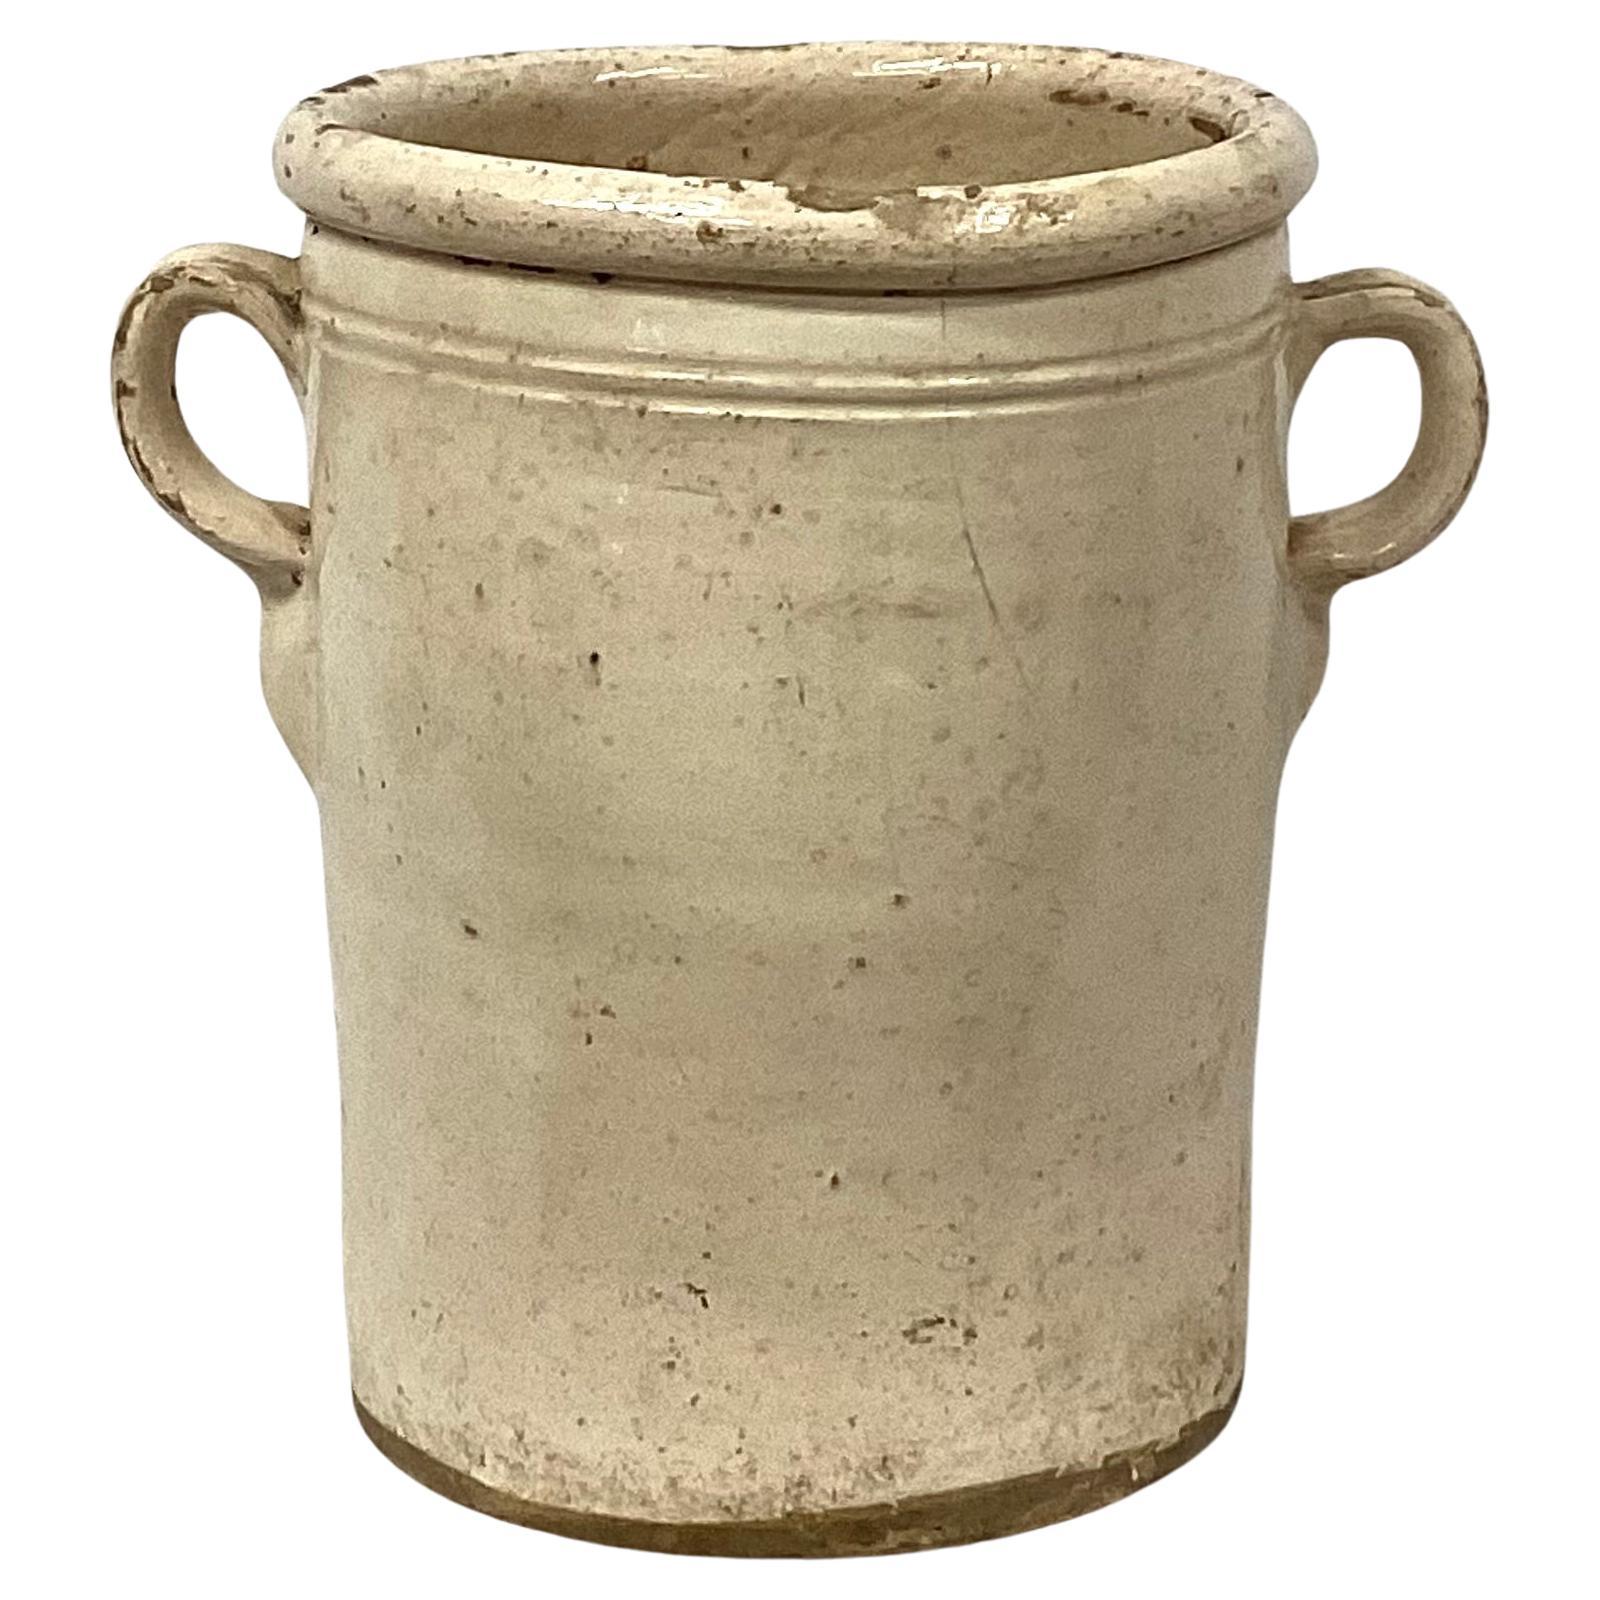 Italienischer Chiminea-Keramiktopf aus dem 19. Jahrhundert mit Griffen. Diese Töpfe wurden zur Aufbewahrung von Lebensmitteln wie Obst, Fleisch oder Gemüse verwendet. Sie wurden für die Verwendung in Verbindung mit einem Holzofen oder einem Kamin